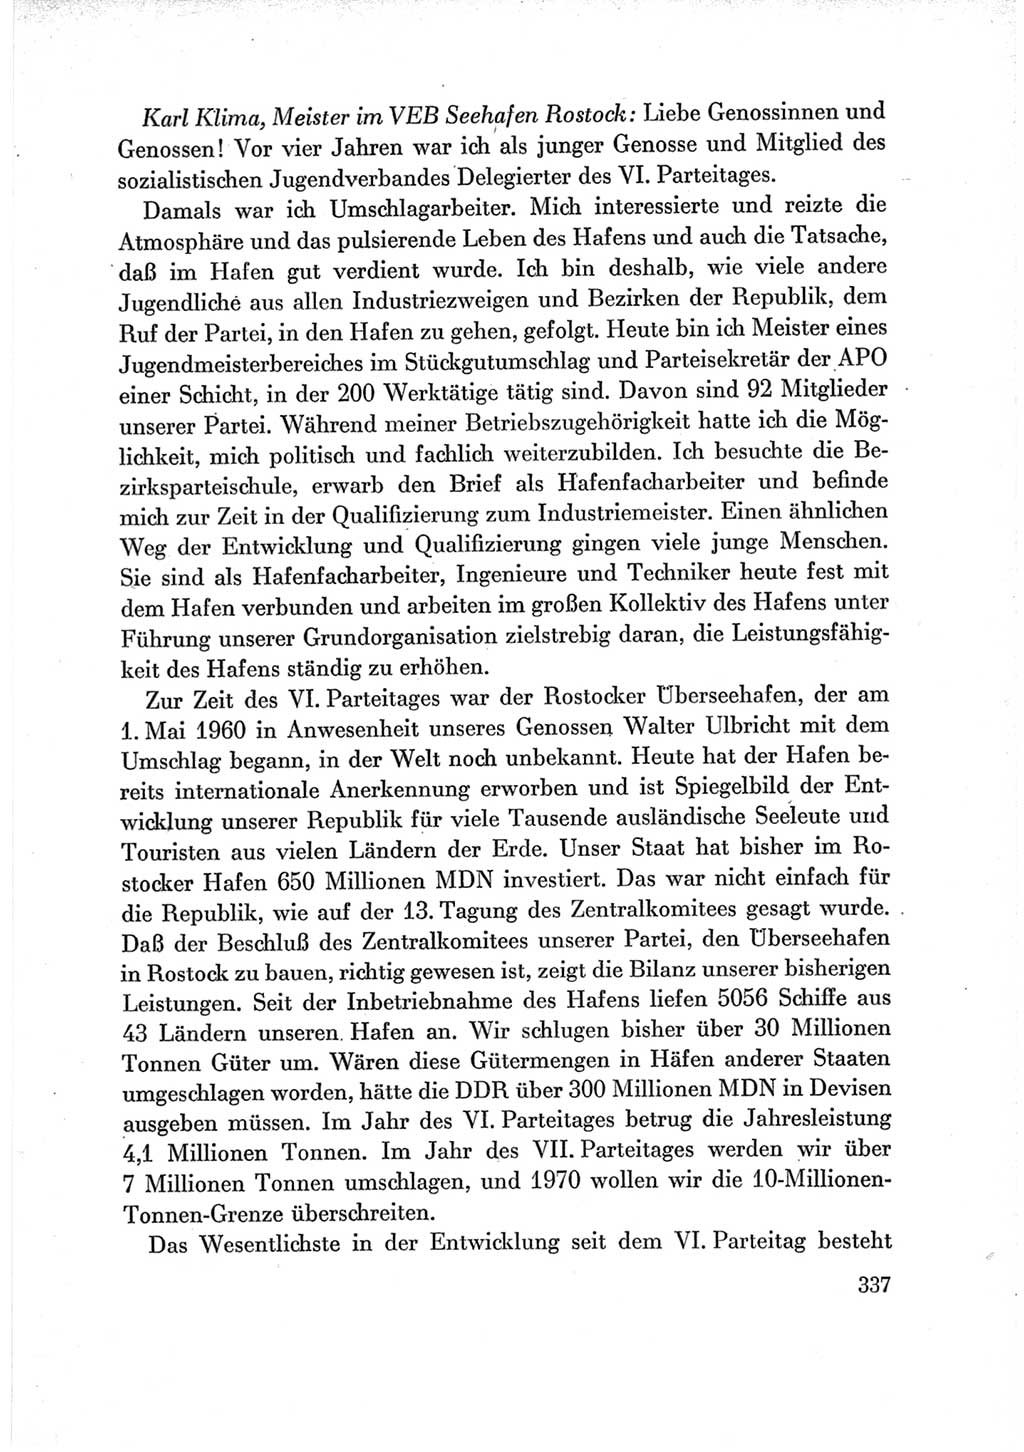 Protokoll der Verhandlungen des Ⅶ. Parteitages der Sozialistischen Einheitspartei Deutschlands (SED) [Deutsche Demokratische Republik (DDR)] 1967, Band Ⅲ, Seite 337 (Prot. Verh. Ⅶ. PT SED DDR 1967, Bd. Ⅲ, S. 337)